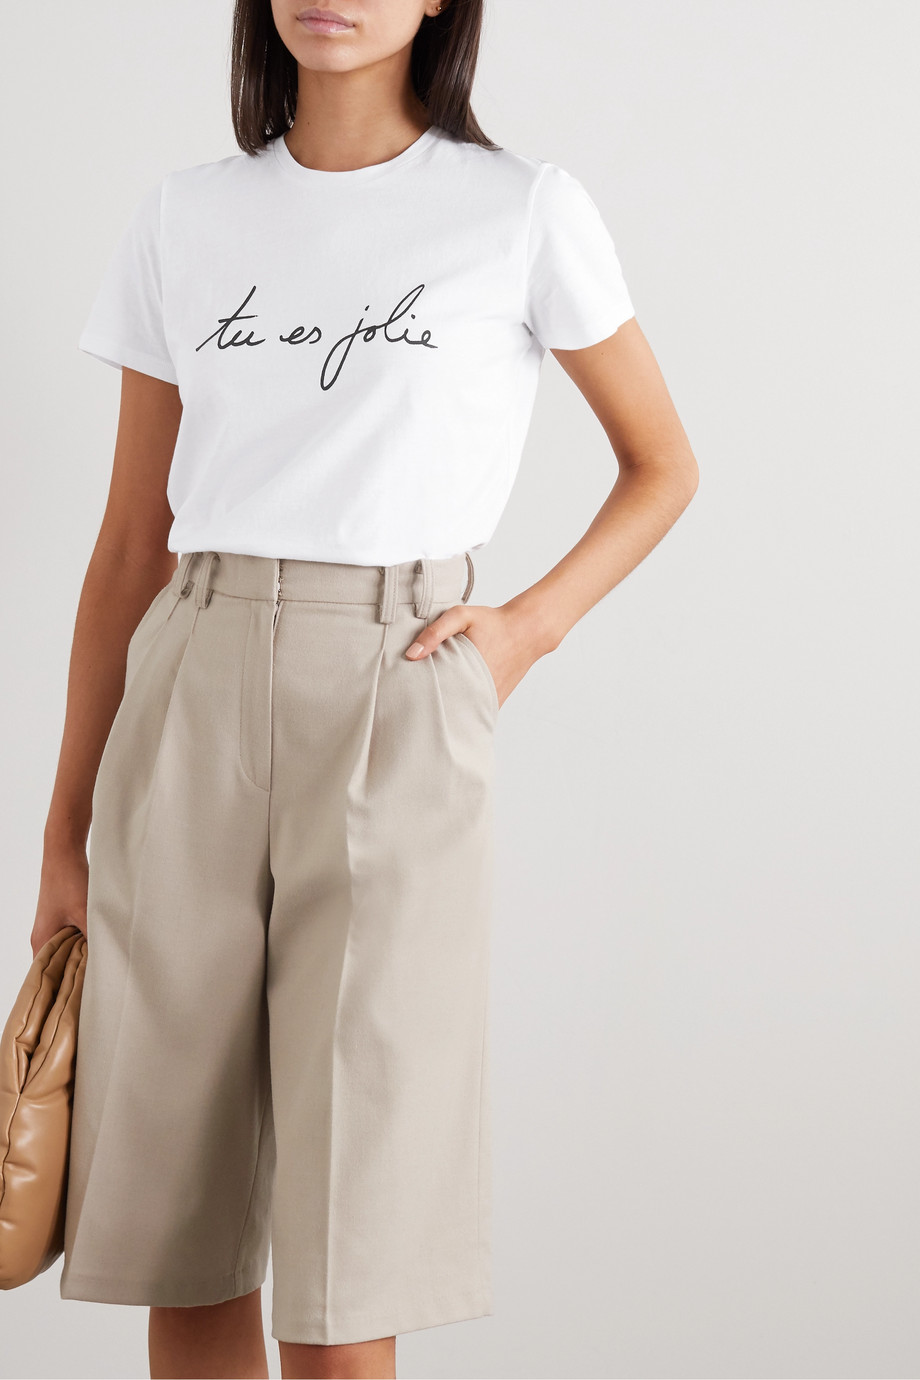 Net-a-Porter x Carine Roitfeld Parfums International Women's Day T-shirt 2020.